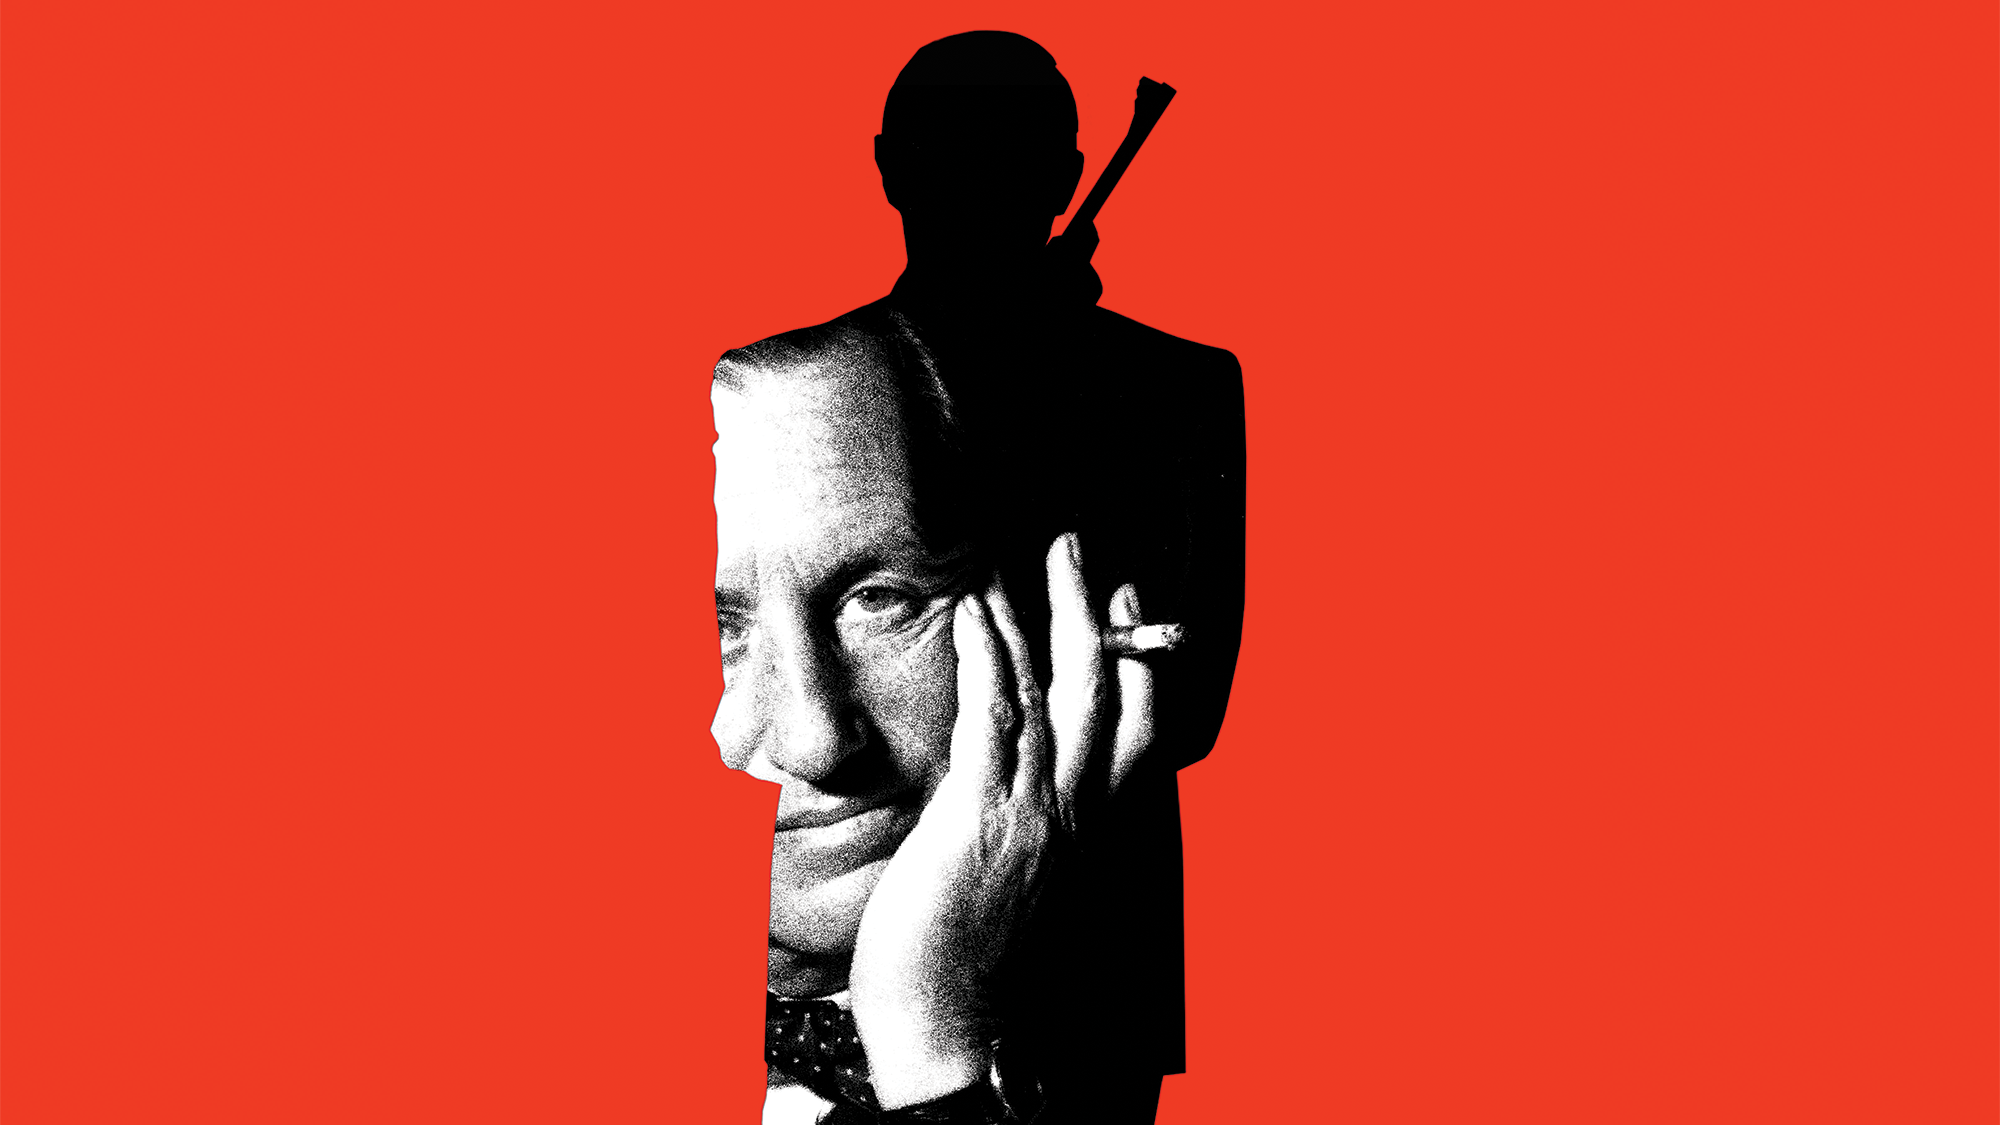 Vor rotem Hintergrund eine Silhouette von James Bond mit einem Schwarz-Weiß-Foto des Autors Ian Fleming im Inneren